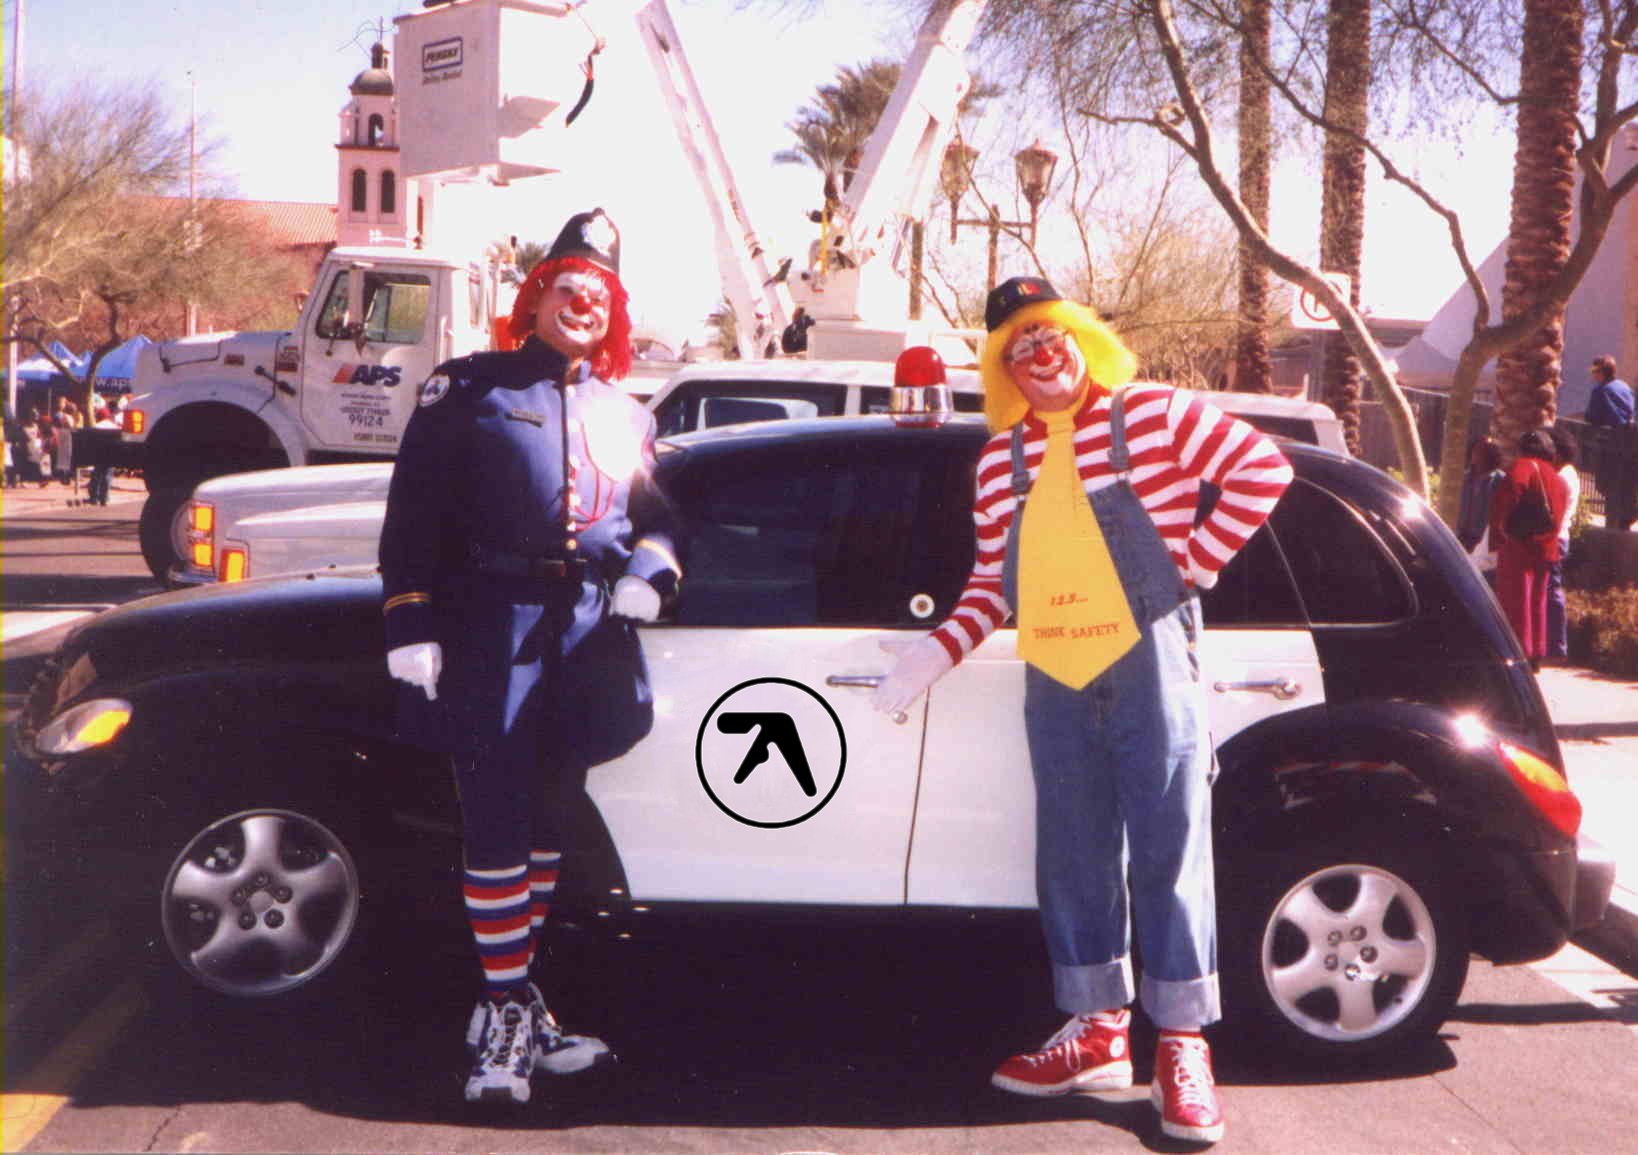 Aphex Twin Clown car by eut0w on DeviantArt